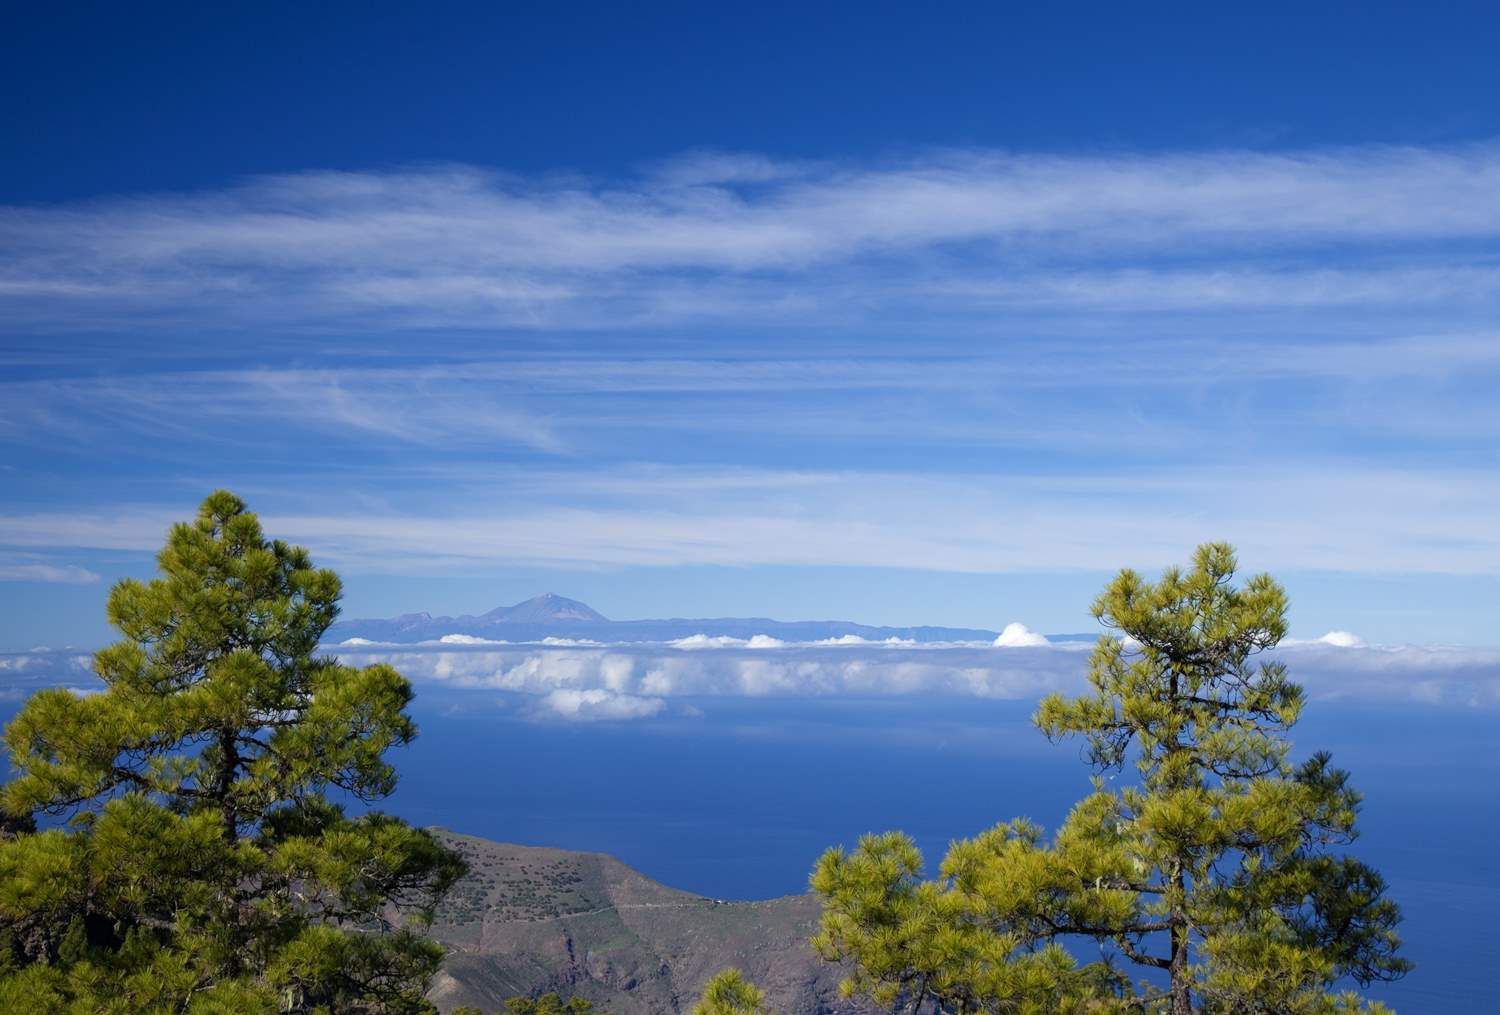 Tamadaba naturpark med trær, fin himmel og flott utsikt mot Teide-fjellet på Tenerife.